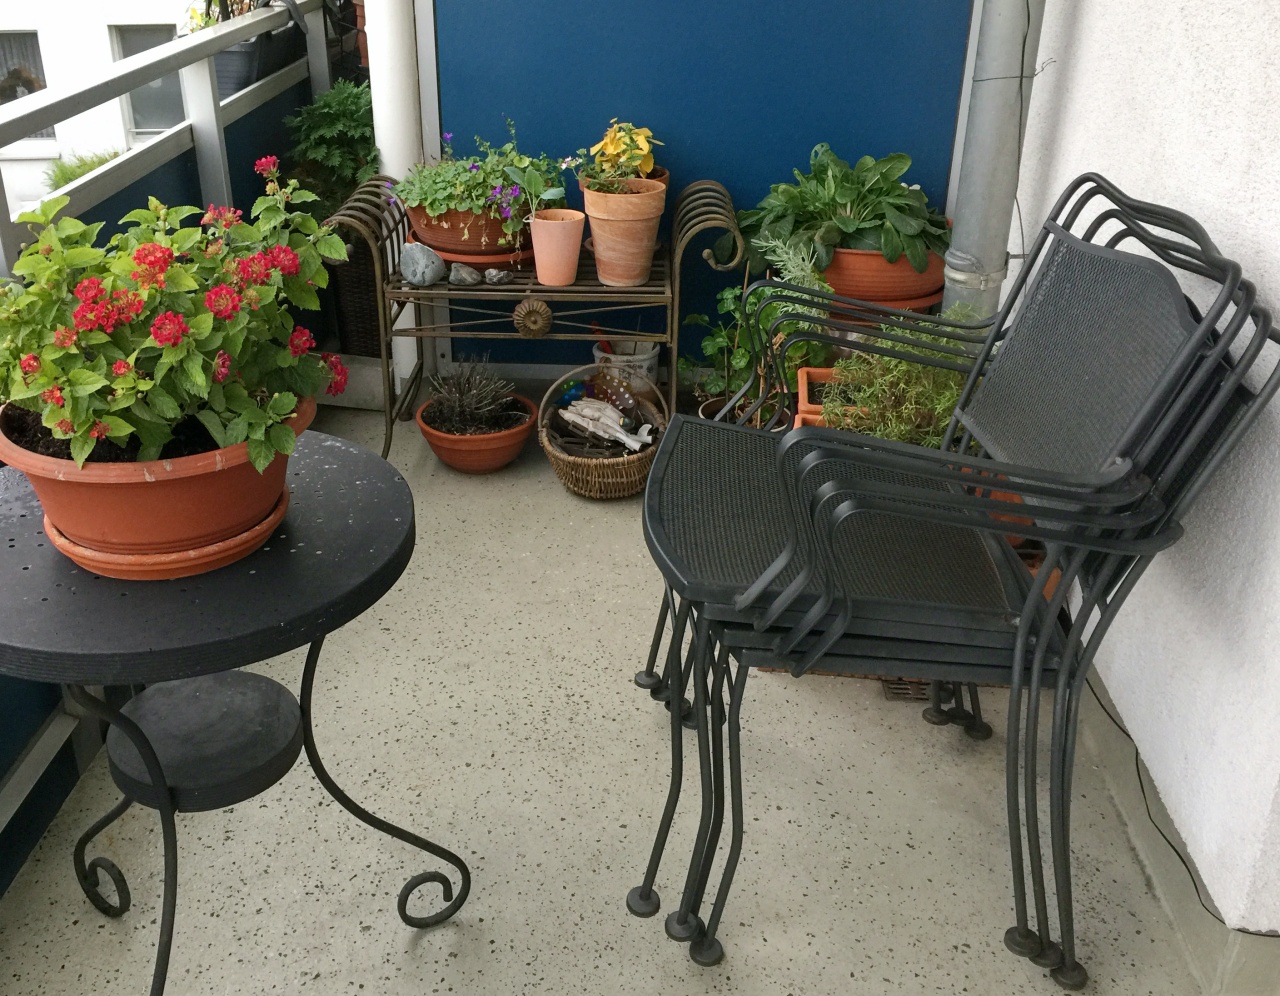 Ordnung auf dem Balkon: Stühle und Kübel sind gestapelt